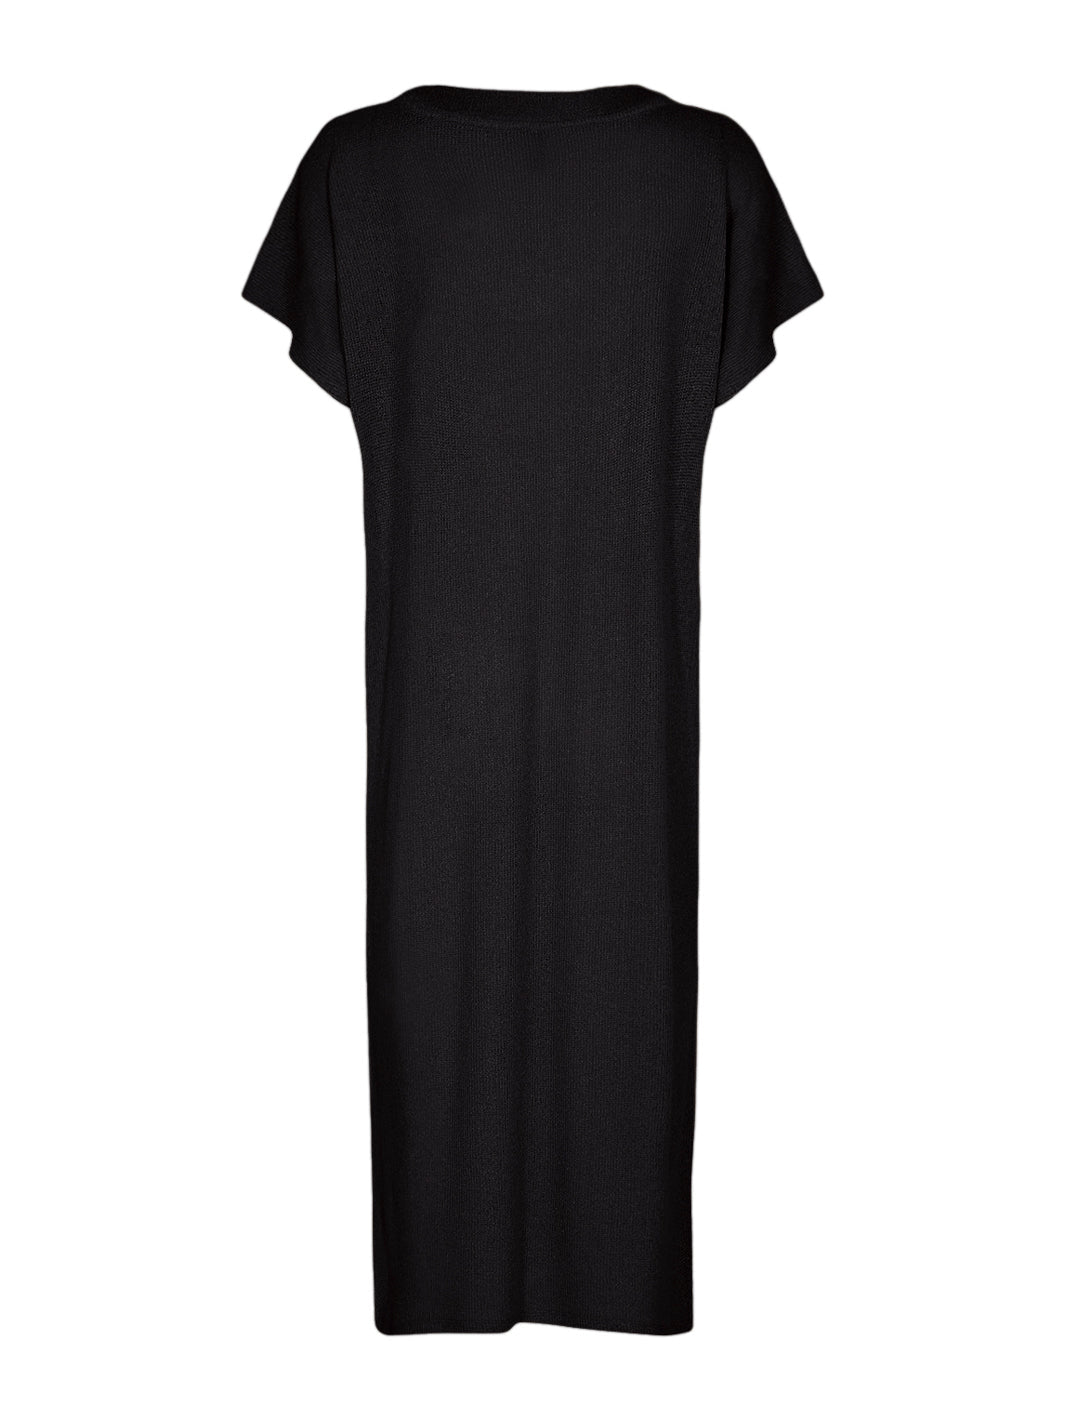 Soya Concept Delia 2 dress black - Online-Mode